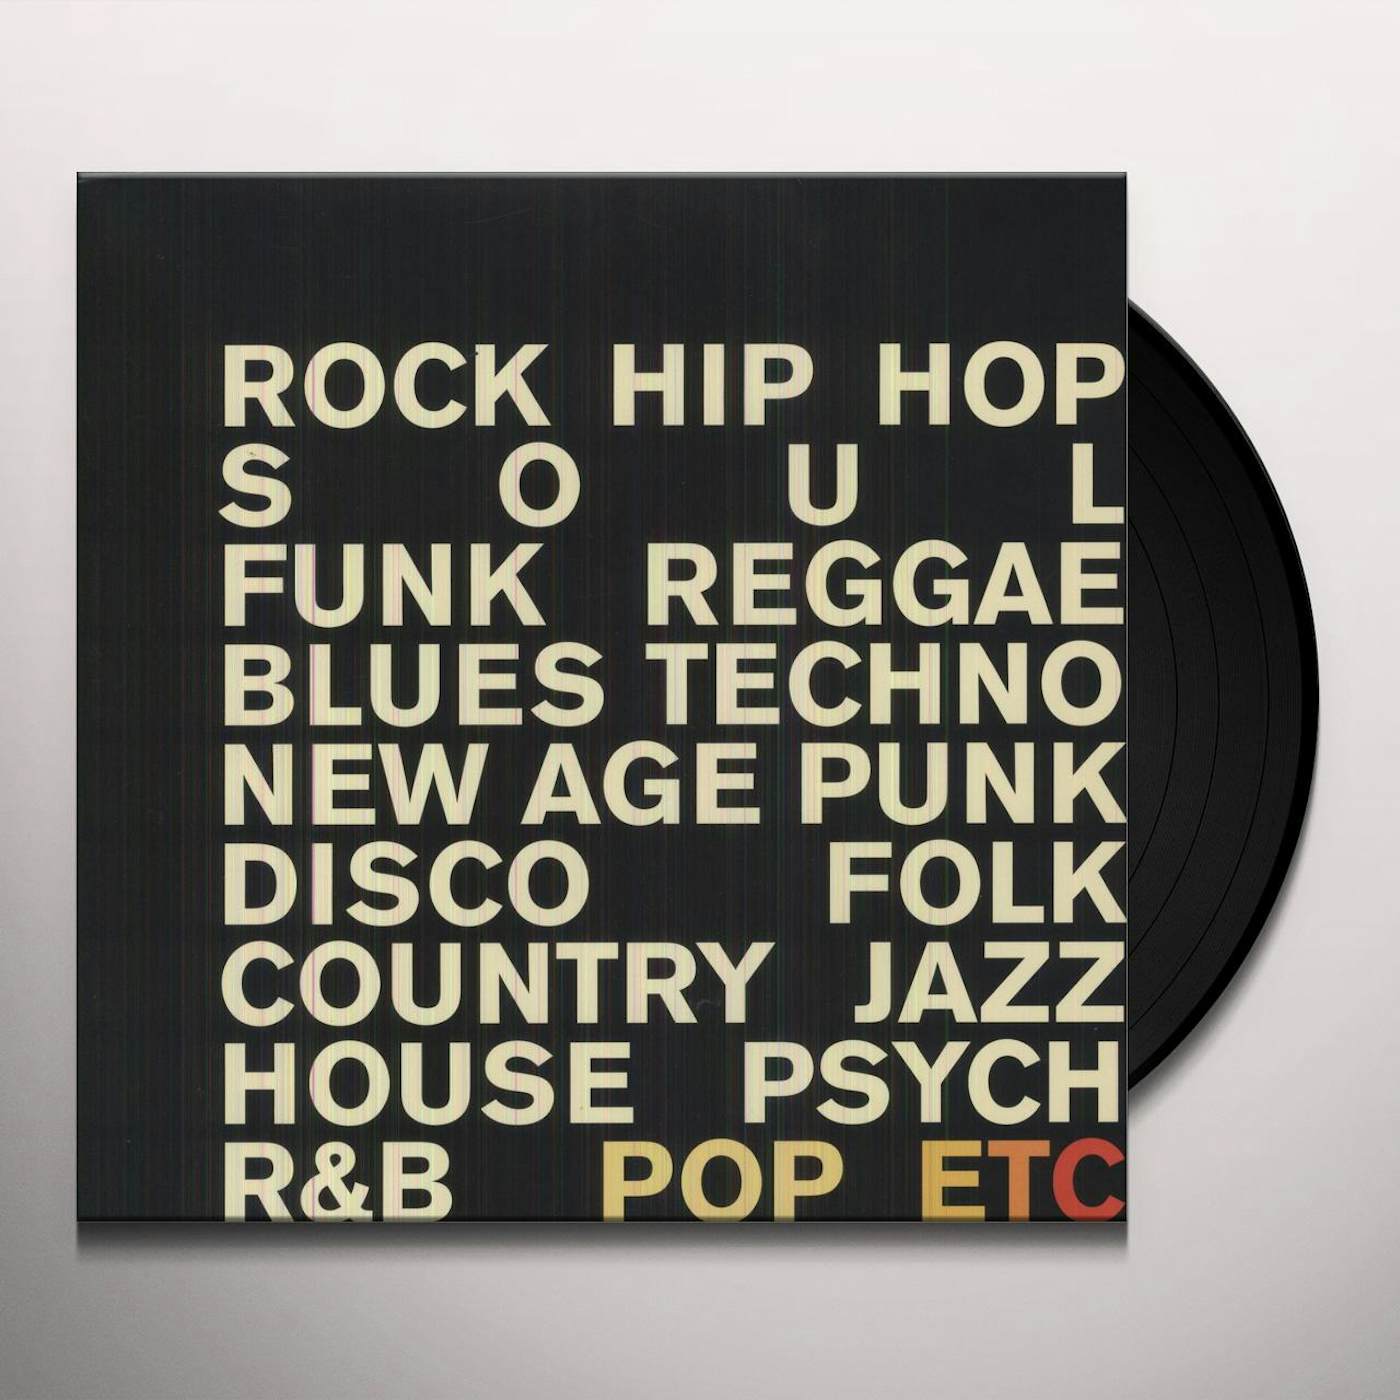 POP ETC Vinyl Record